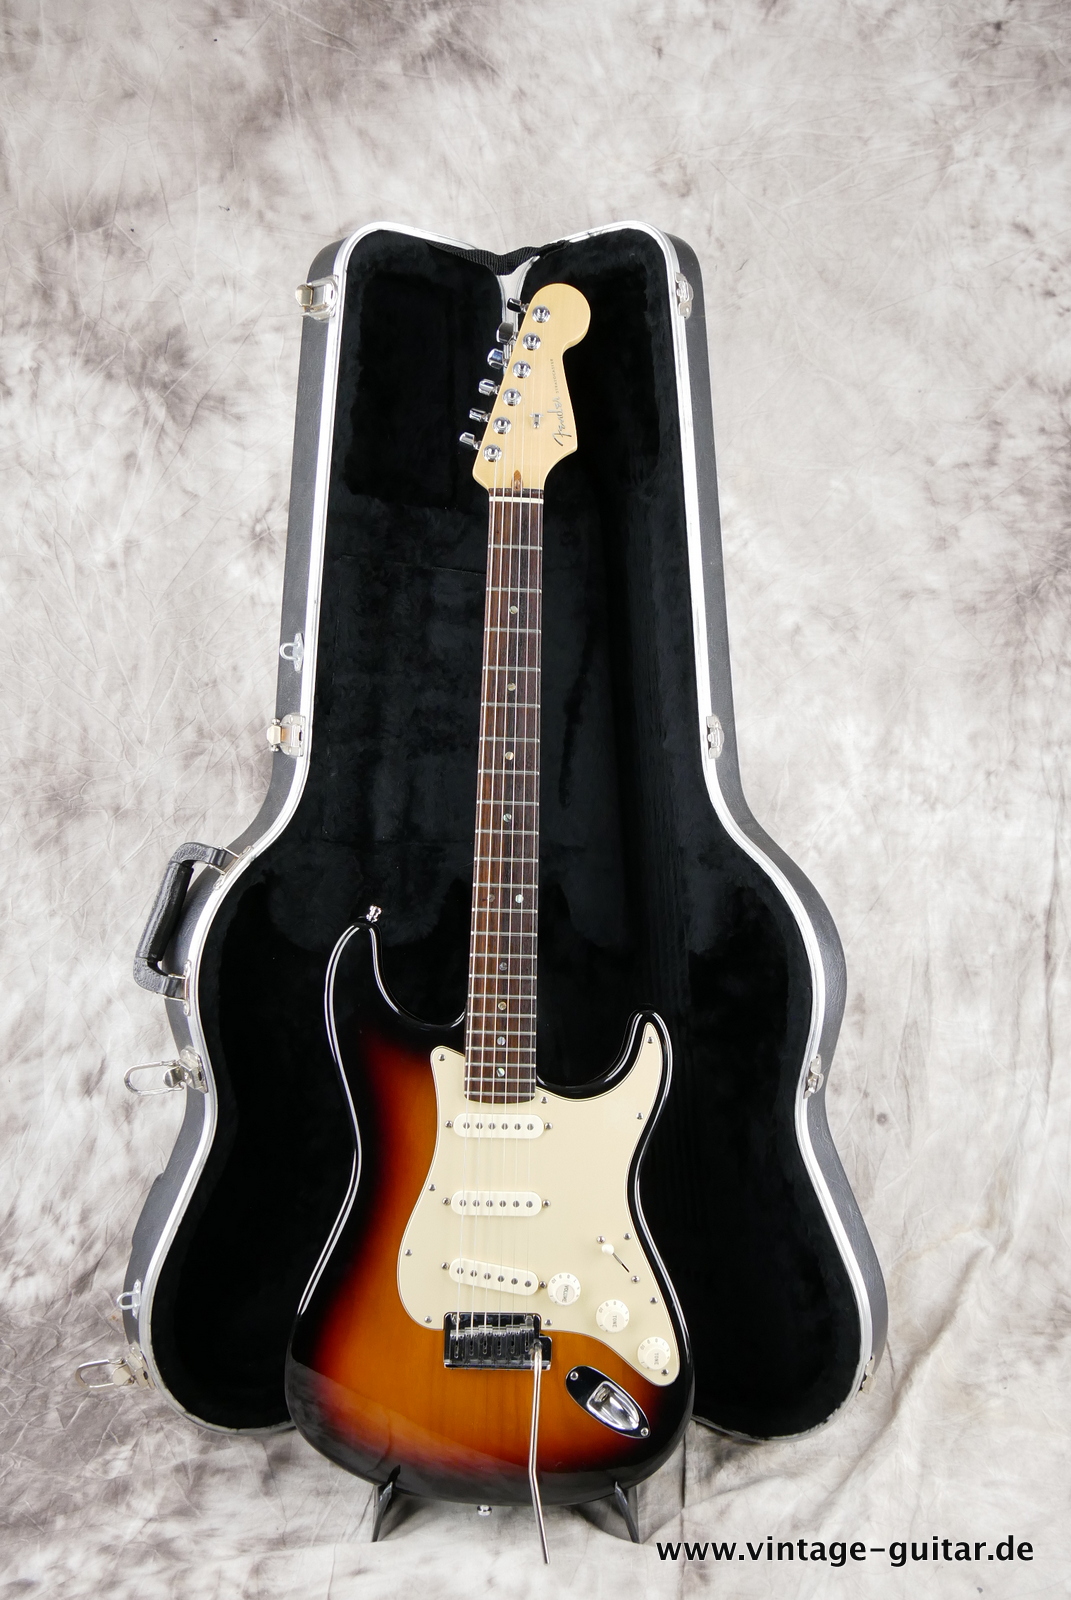 img/vintage/5280/Fender_Startocaster_American_Deluxe_sunburst_samarium-cobalt-noiseless_tremolo_2005-013.JPG